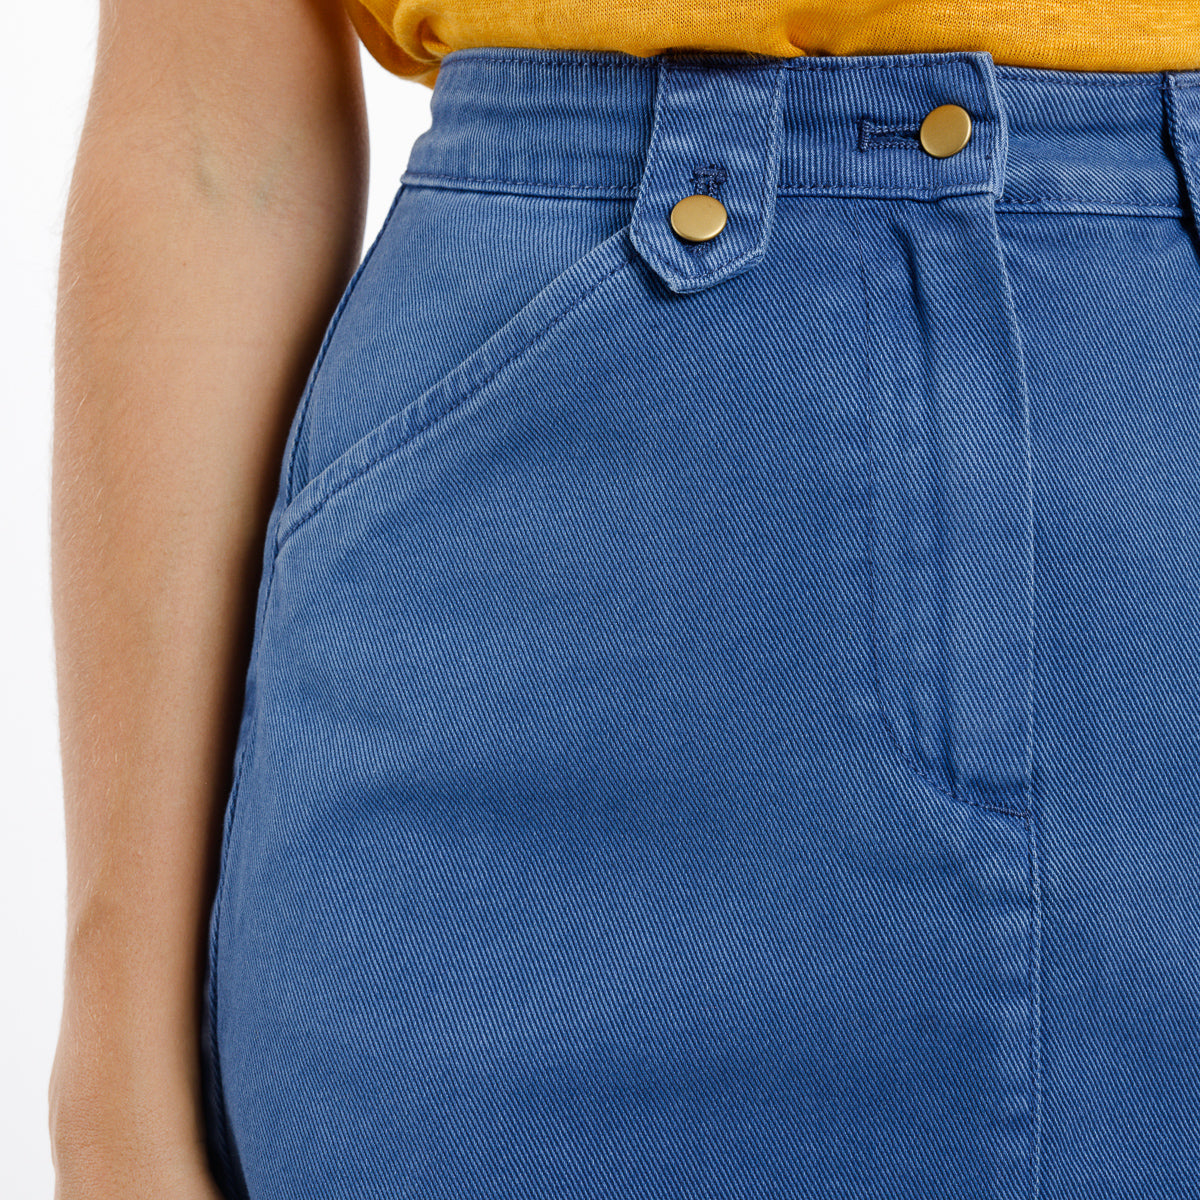 Zoom passant pointu et poche en biais de la jupe Ellynn Bleu